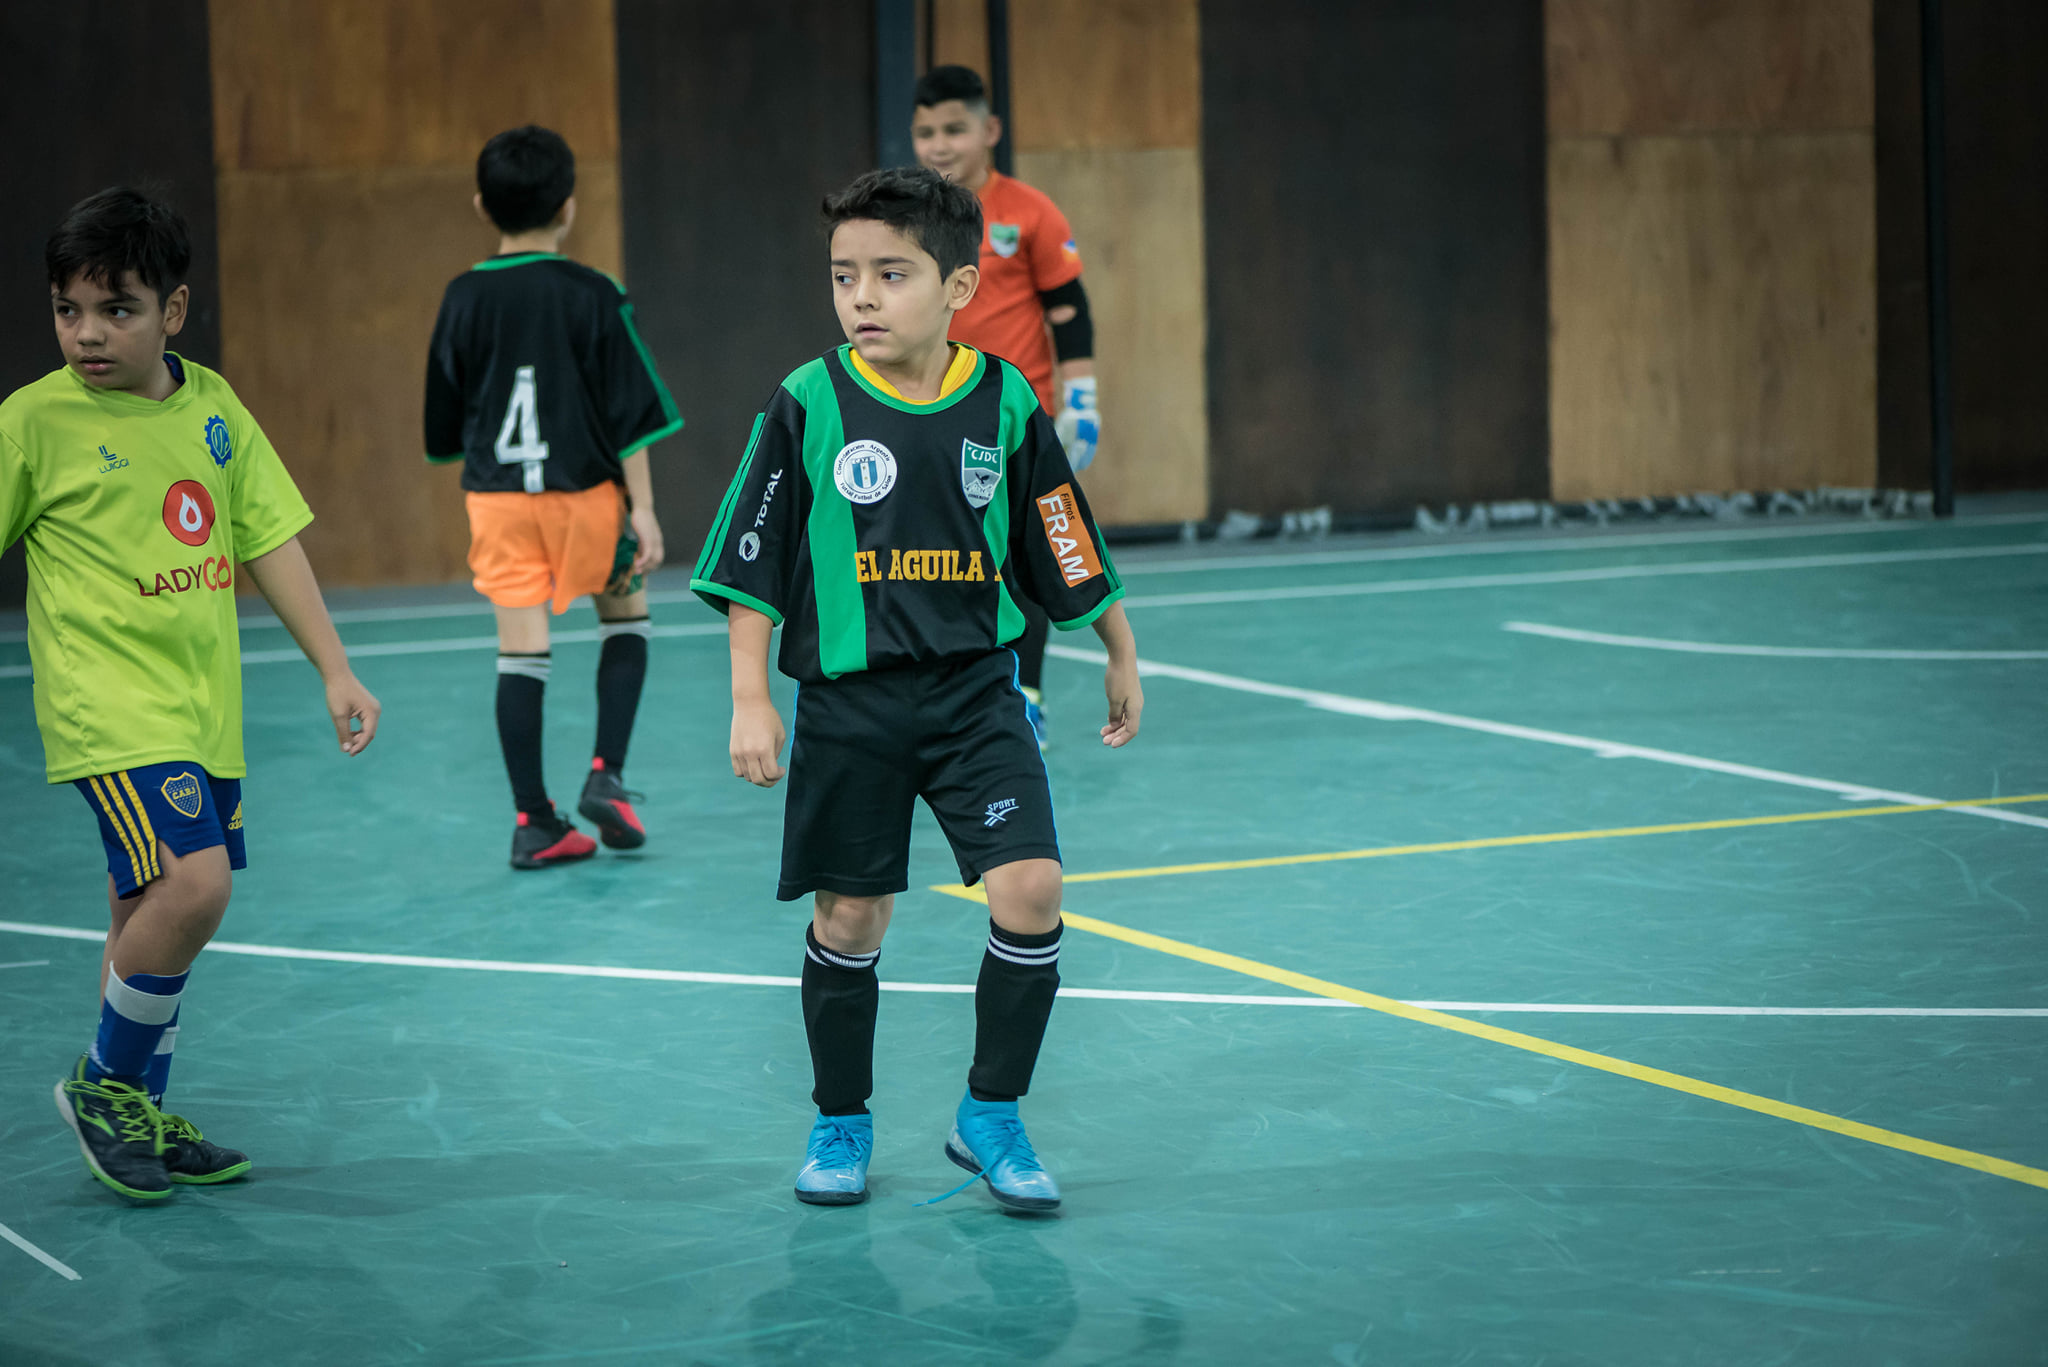 LOS PEQUES SIGUEN JUGANDO - Archivo · Futsal Ushuaia - Futbol de Salón en Tierra del Fuego